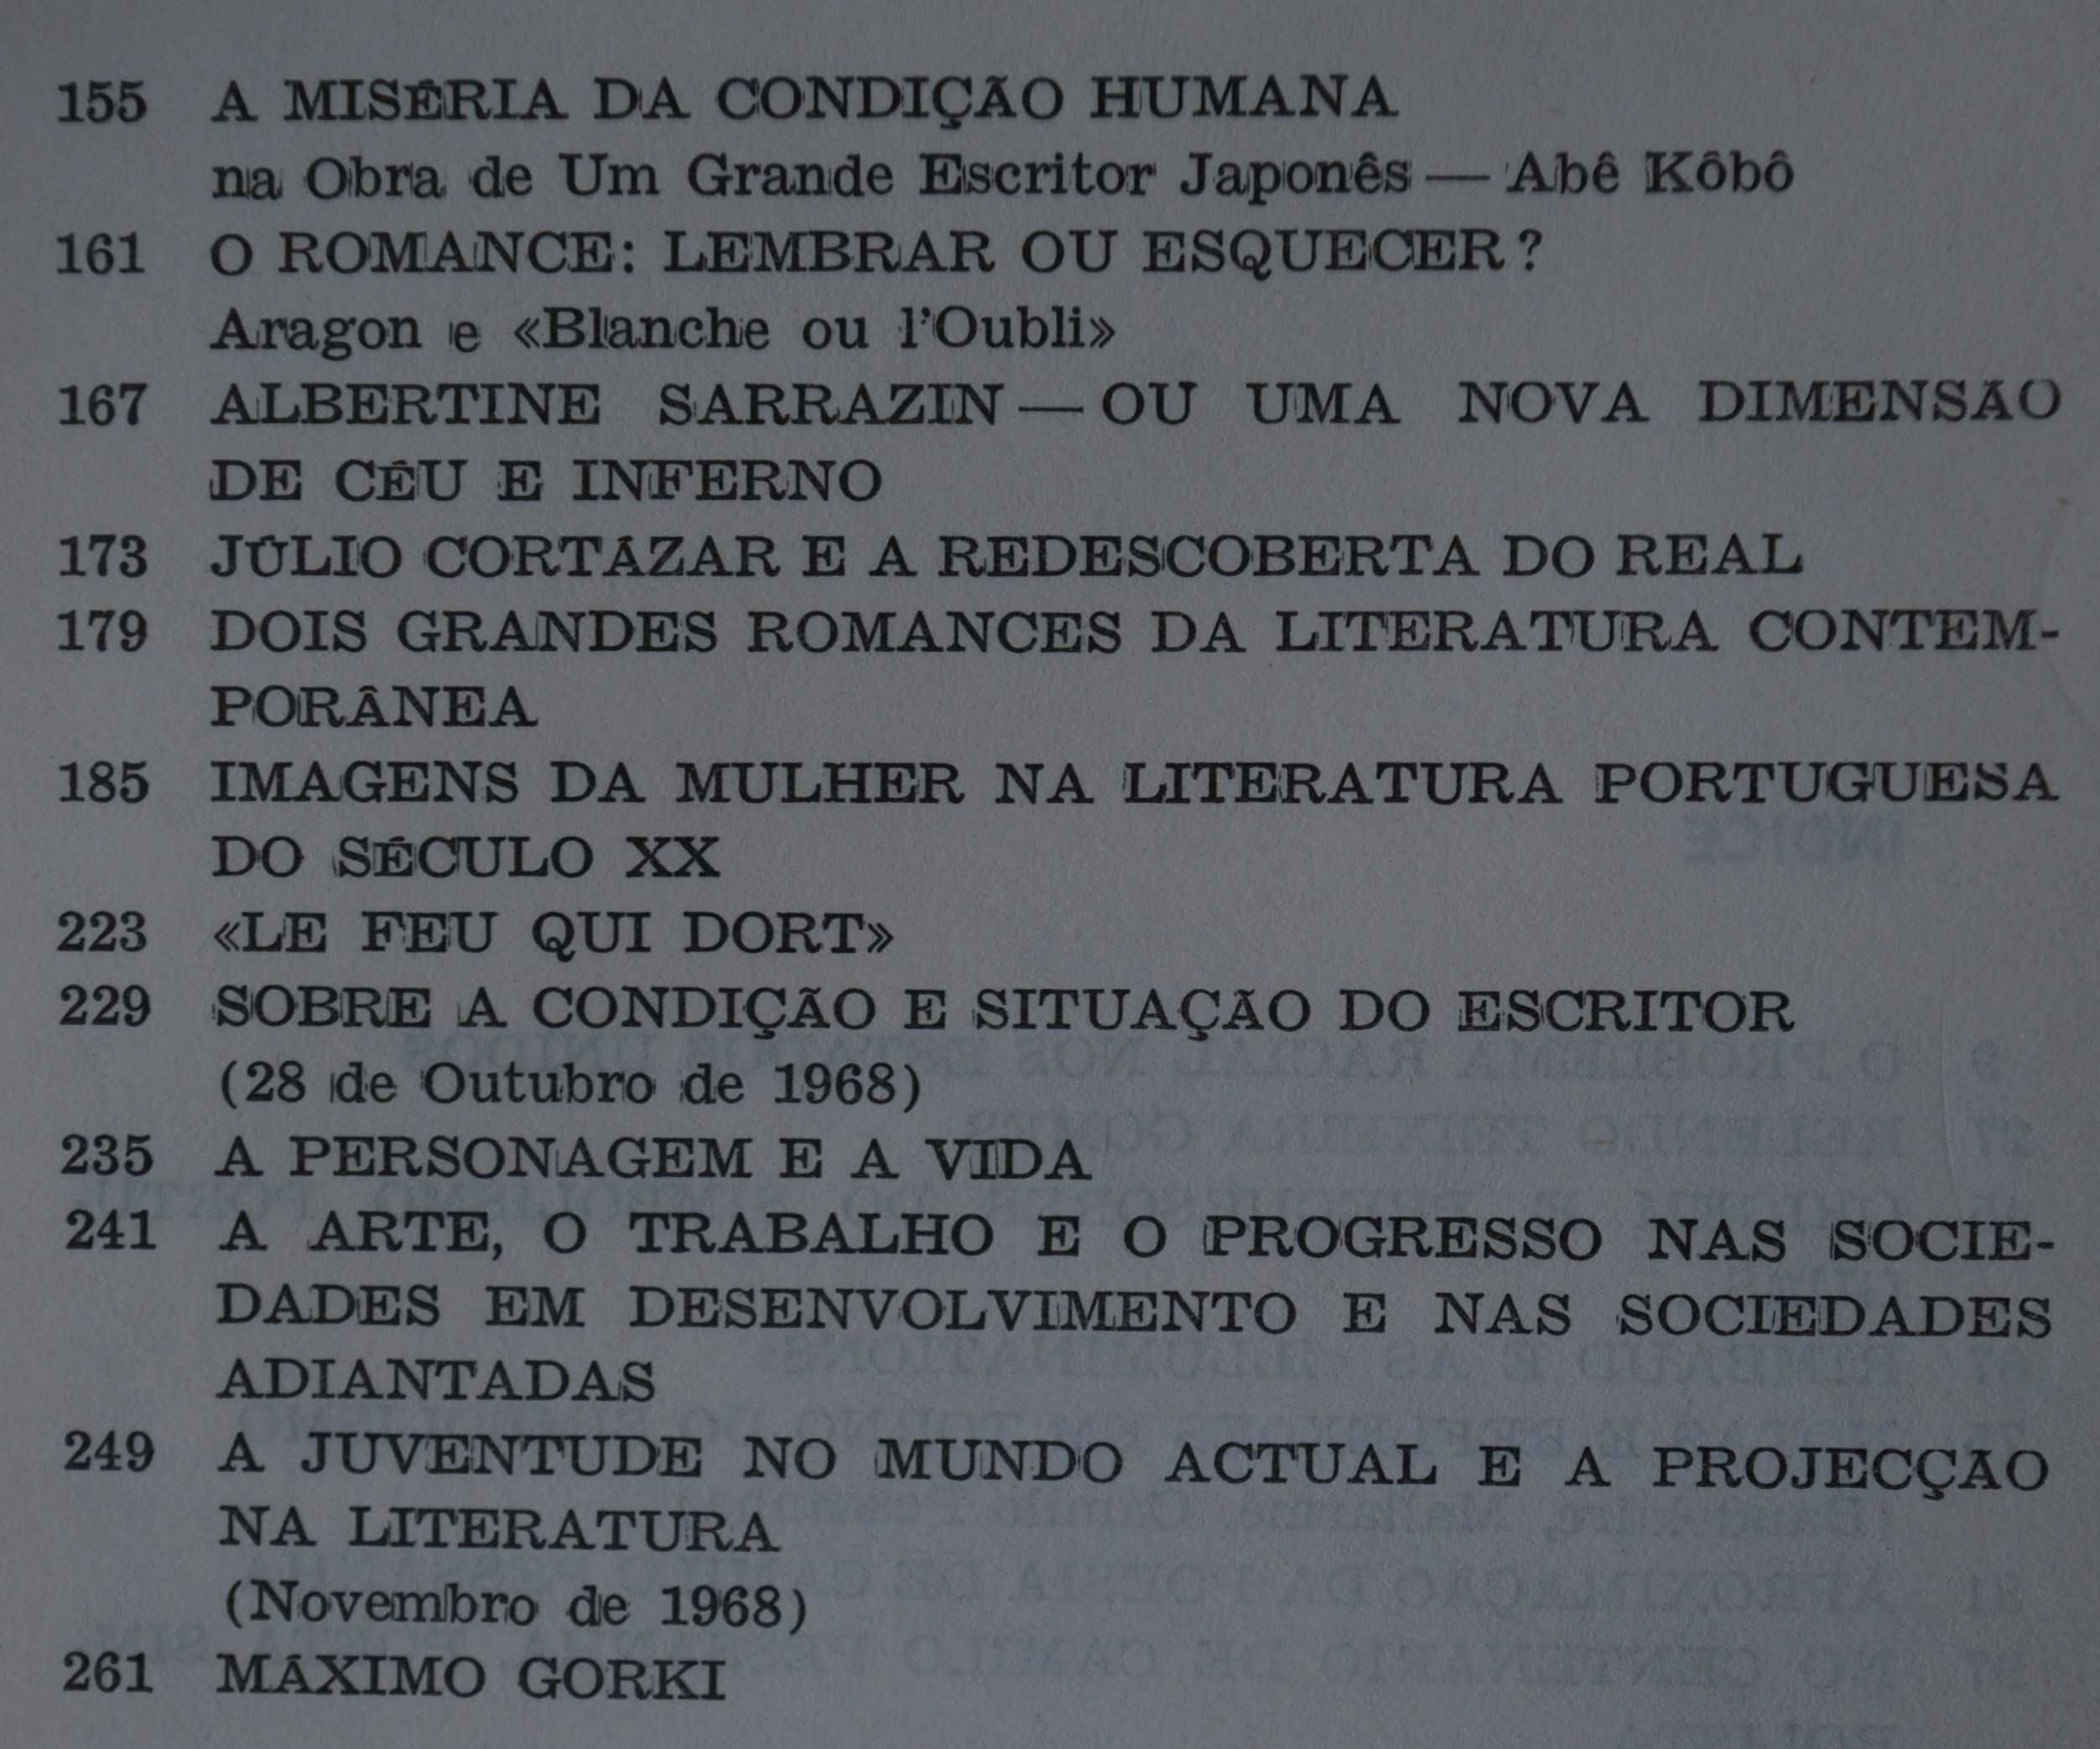 Ensaios de Escreviver de Urbano Tavares Rodrigues - 1 Edição Ano 1970